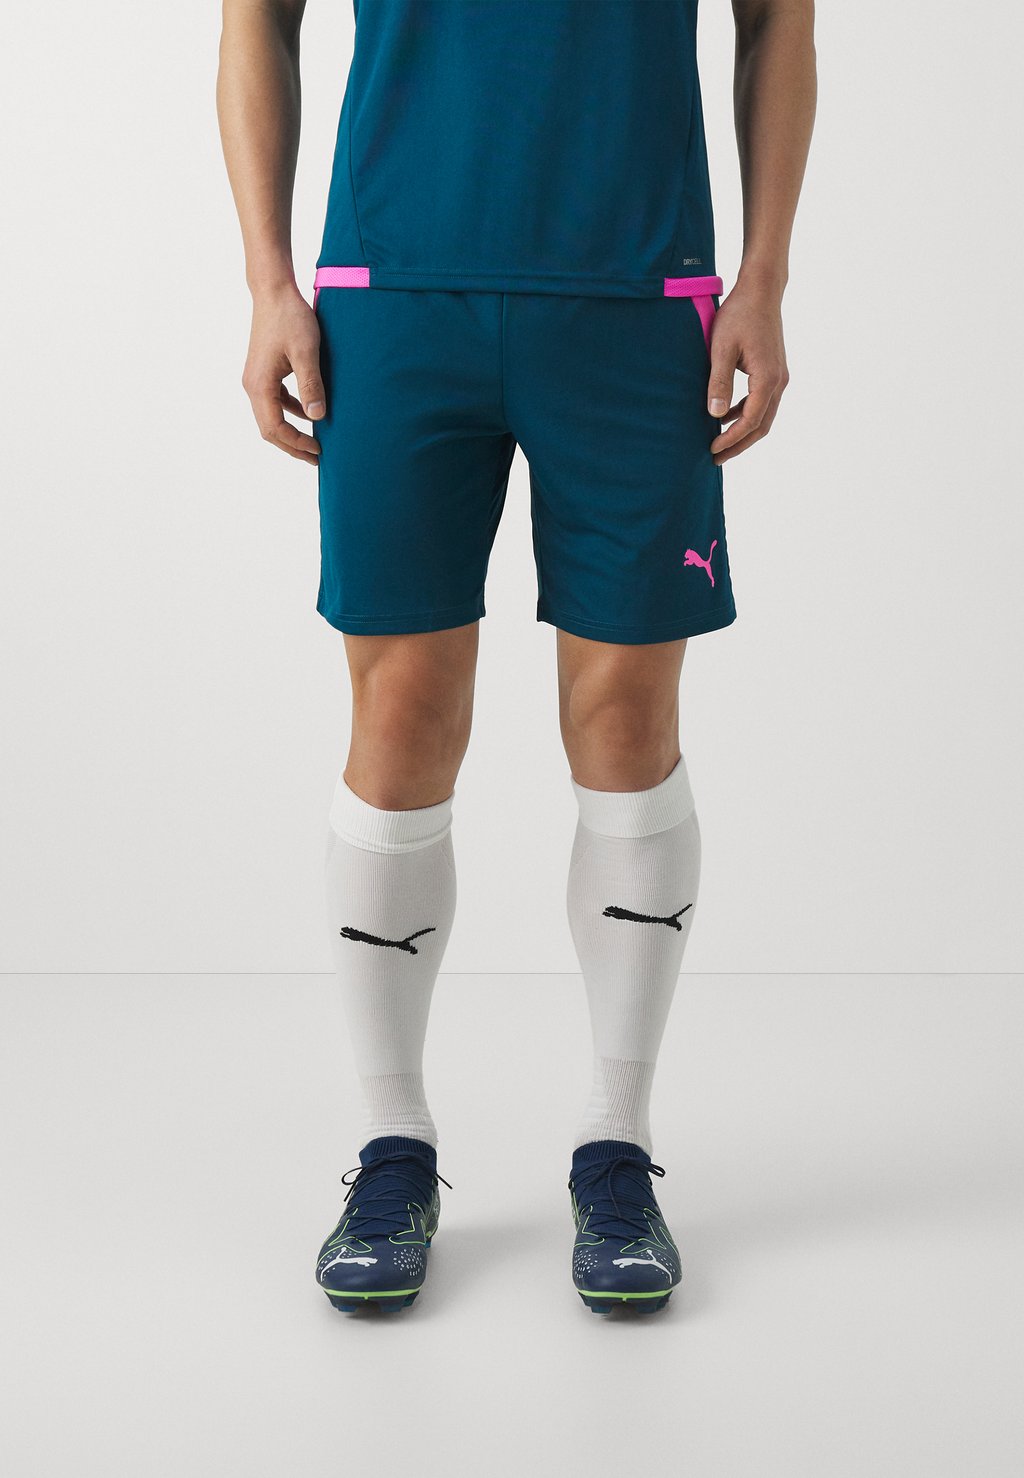 Спортивные шорты Teamliga Training Shorts Open Pockets Puma, цвет ocean tropic/electric lime